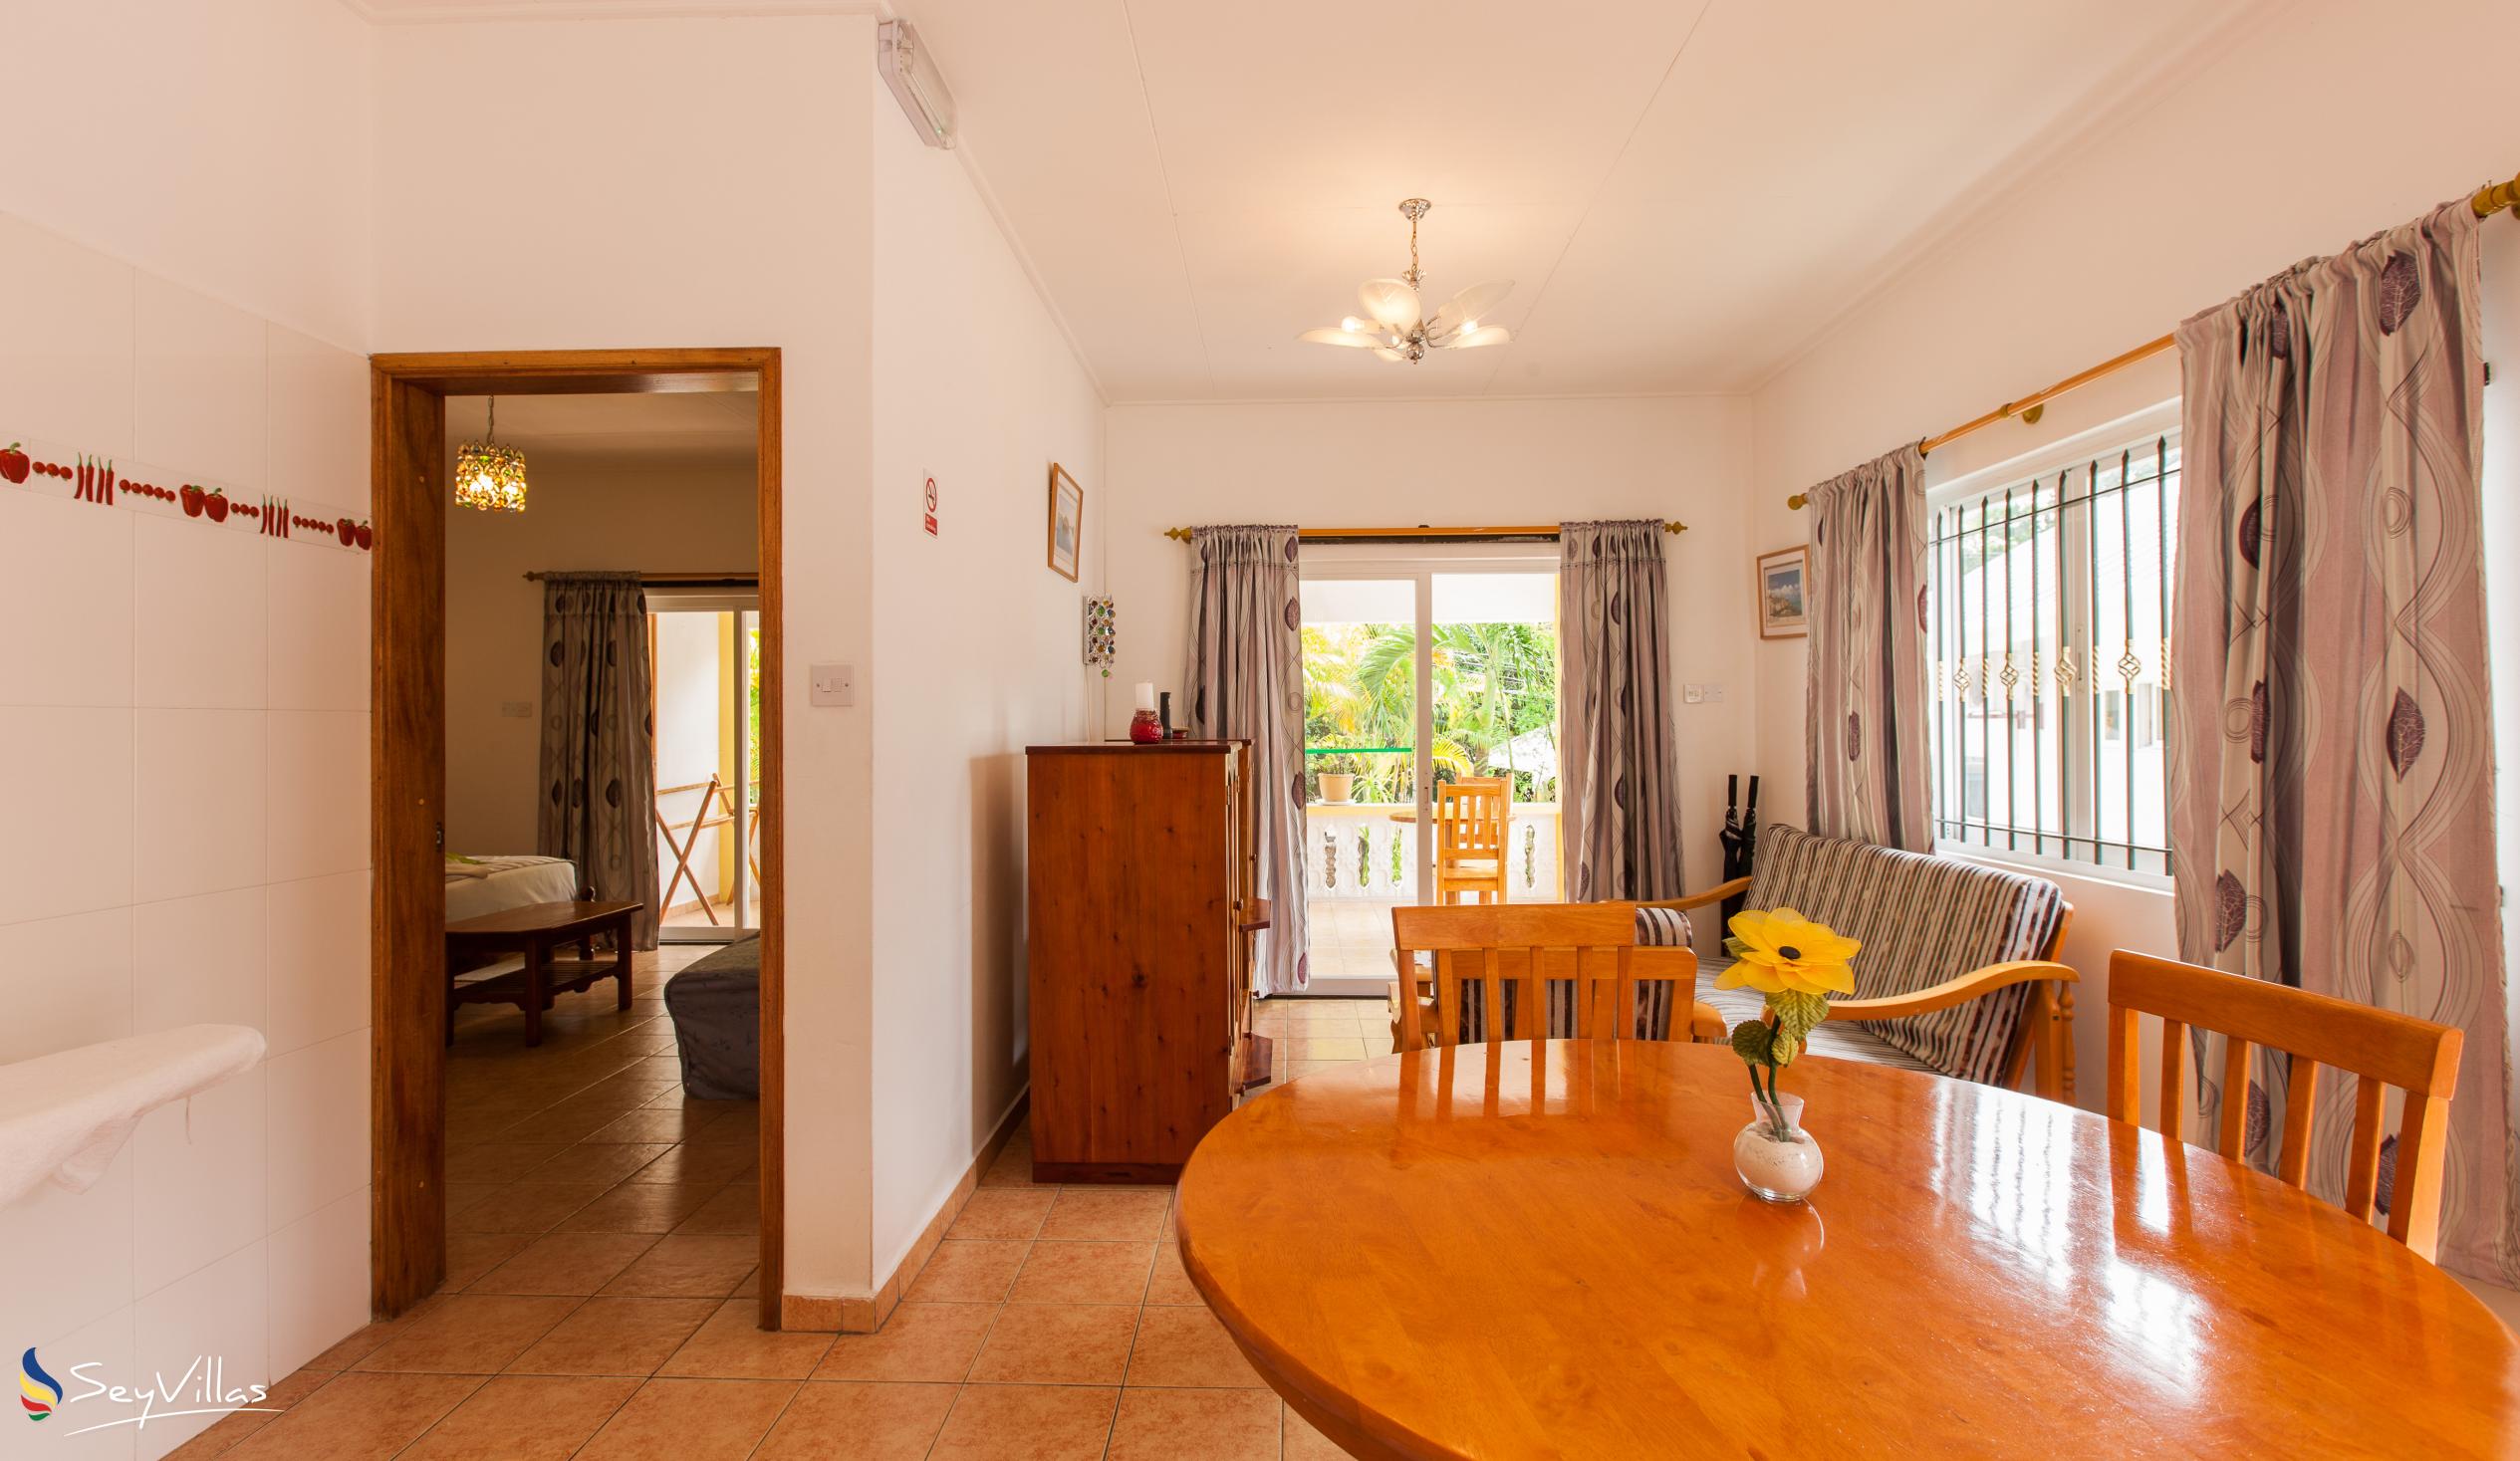 Foto 55: Acquario Villa - Appartamento con 1 camera da letto - Praslin (Seychelles)